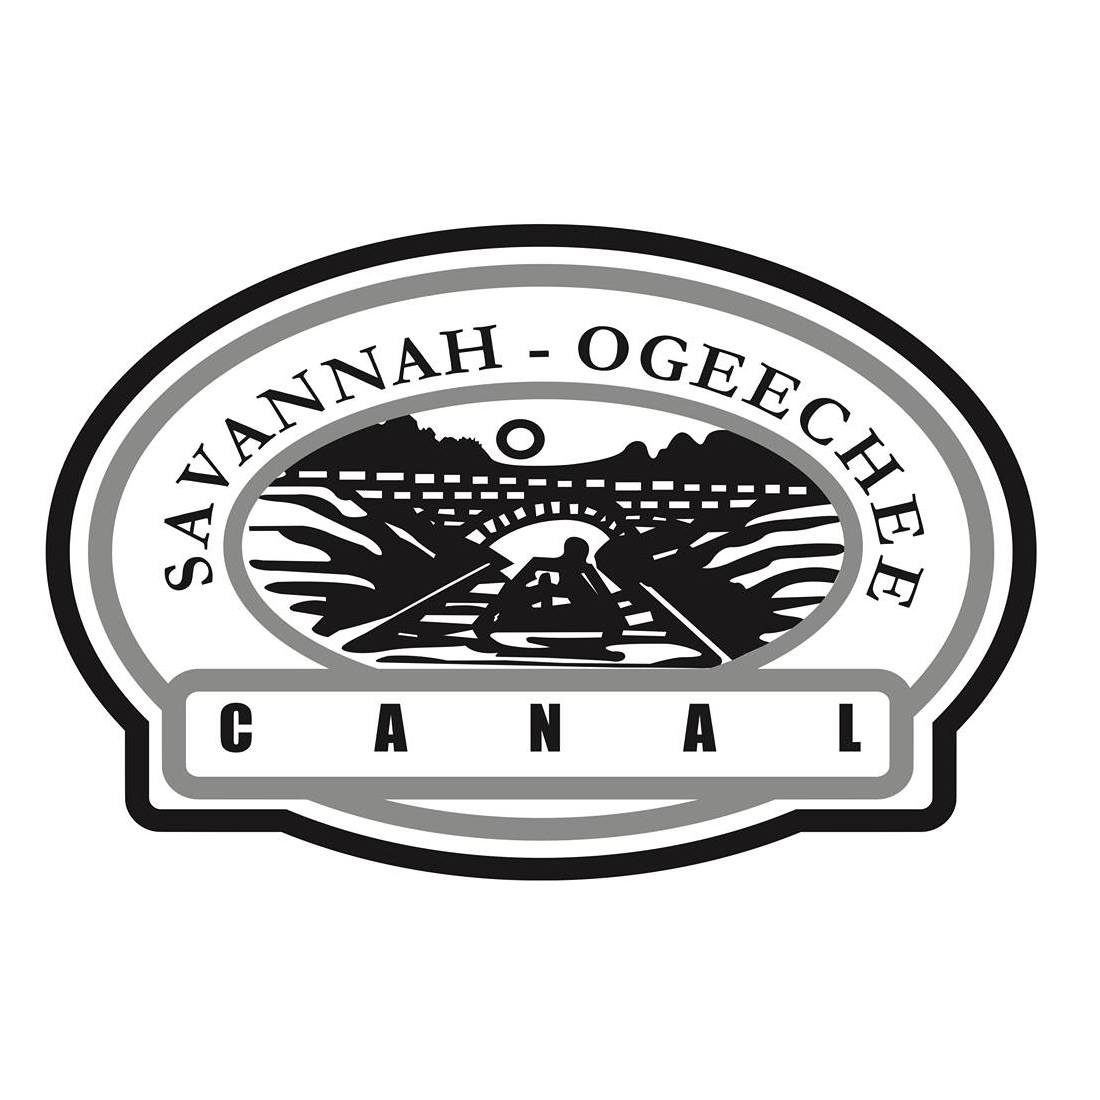 Savannah-Ogeechee Canal Museum & Nature Center - Logo